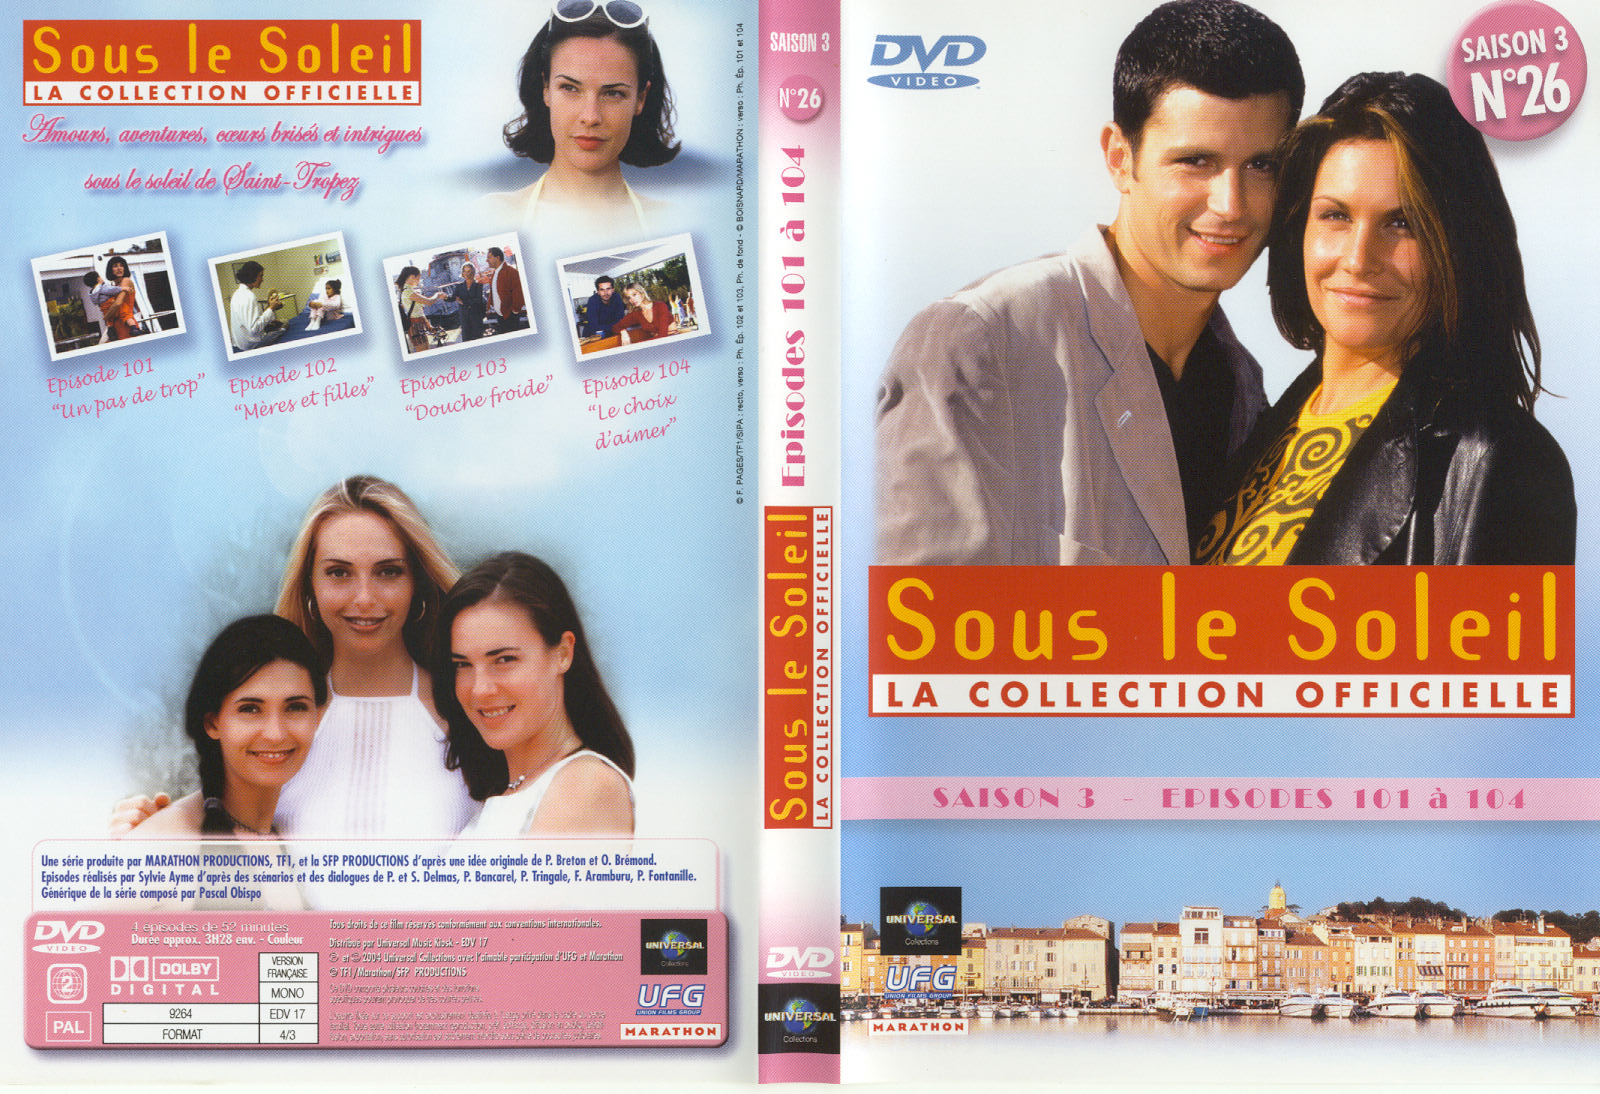 Jaquette DVD Sous le soleil saison 3 vol 26